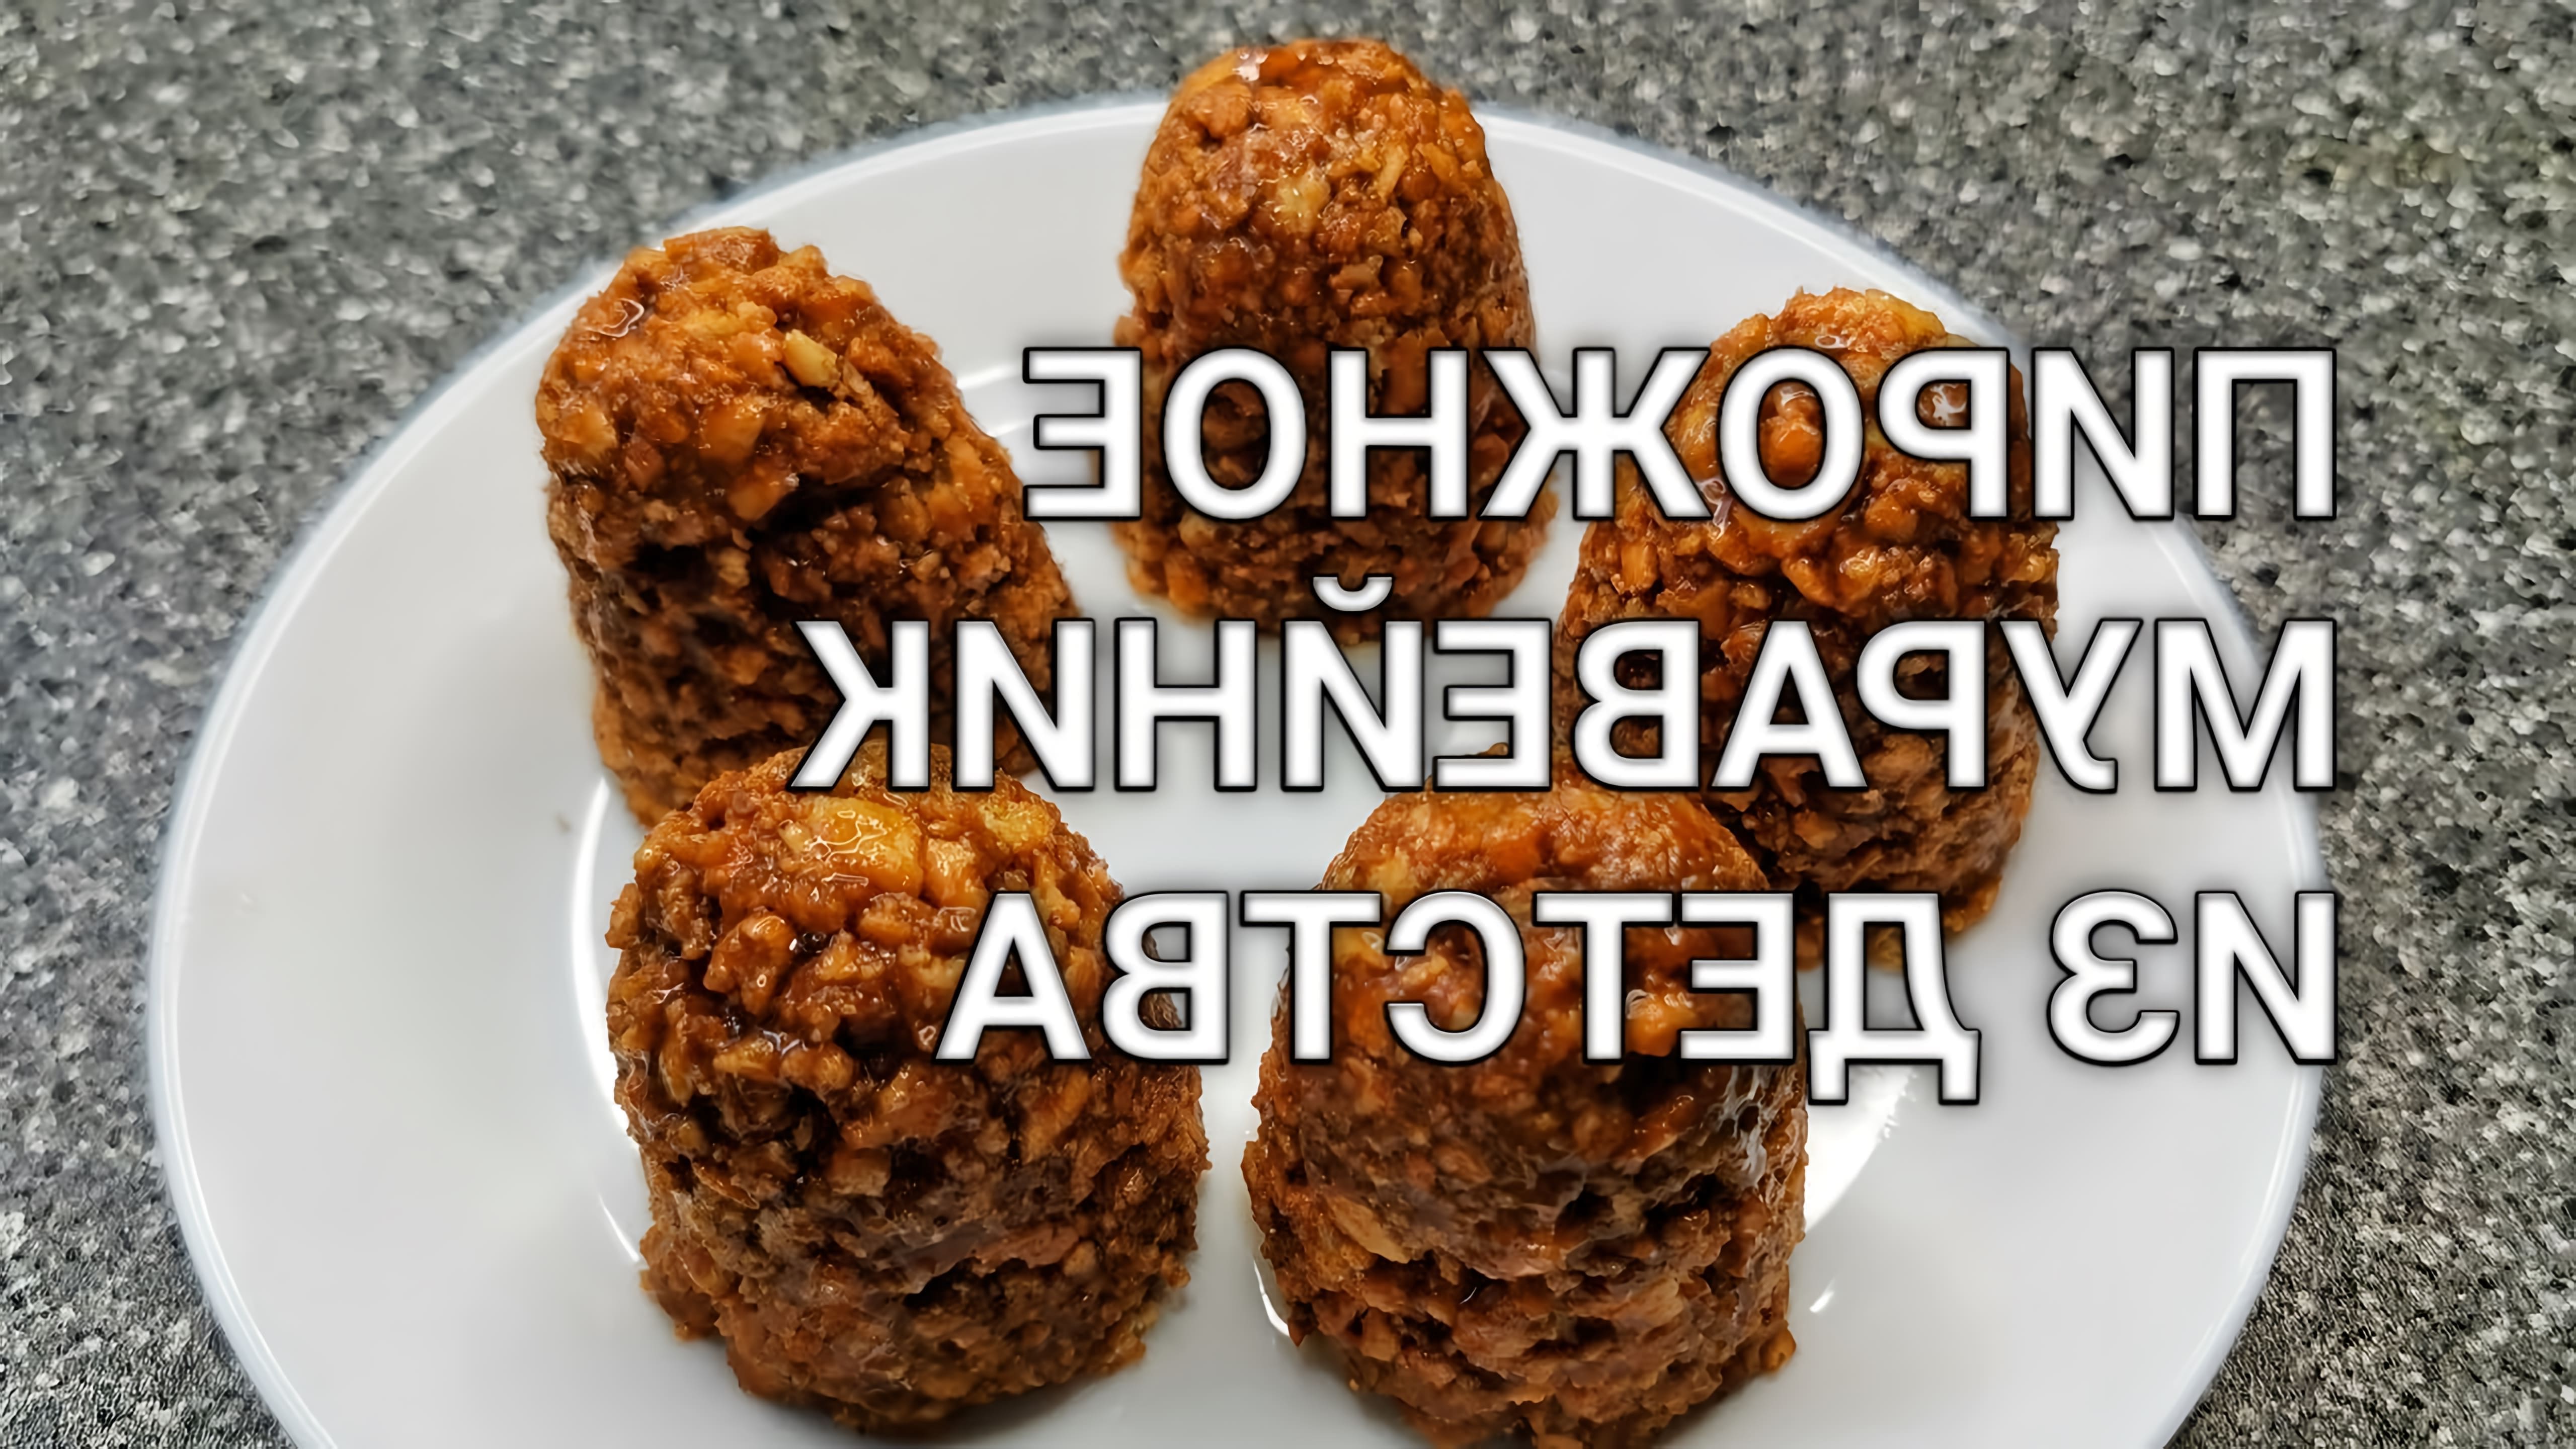 В этом видео демонстрируется рецепт приготовления пирожного "Муравейник" из двух ингредиентов - крекеров и вареной сгущенки